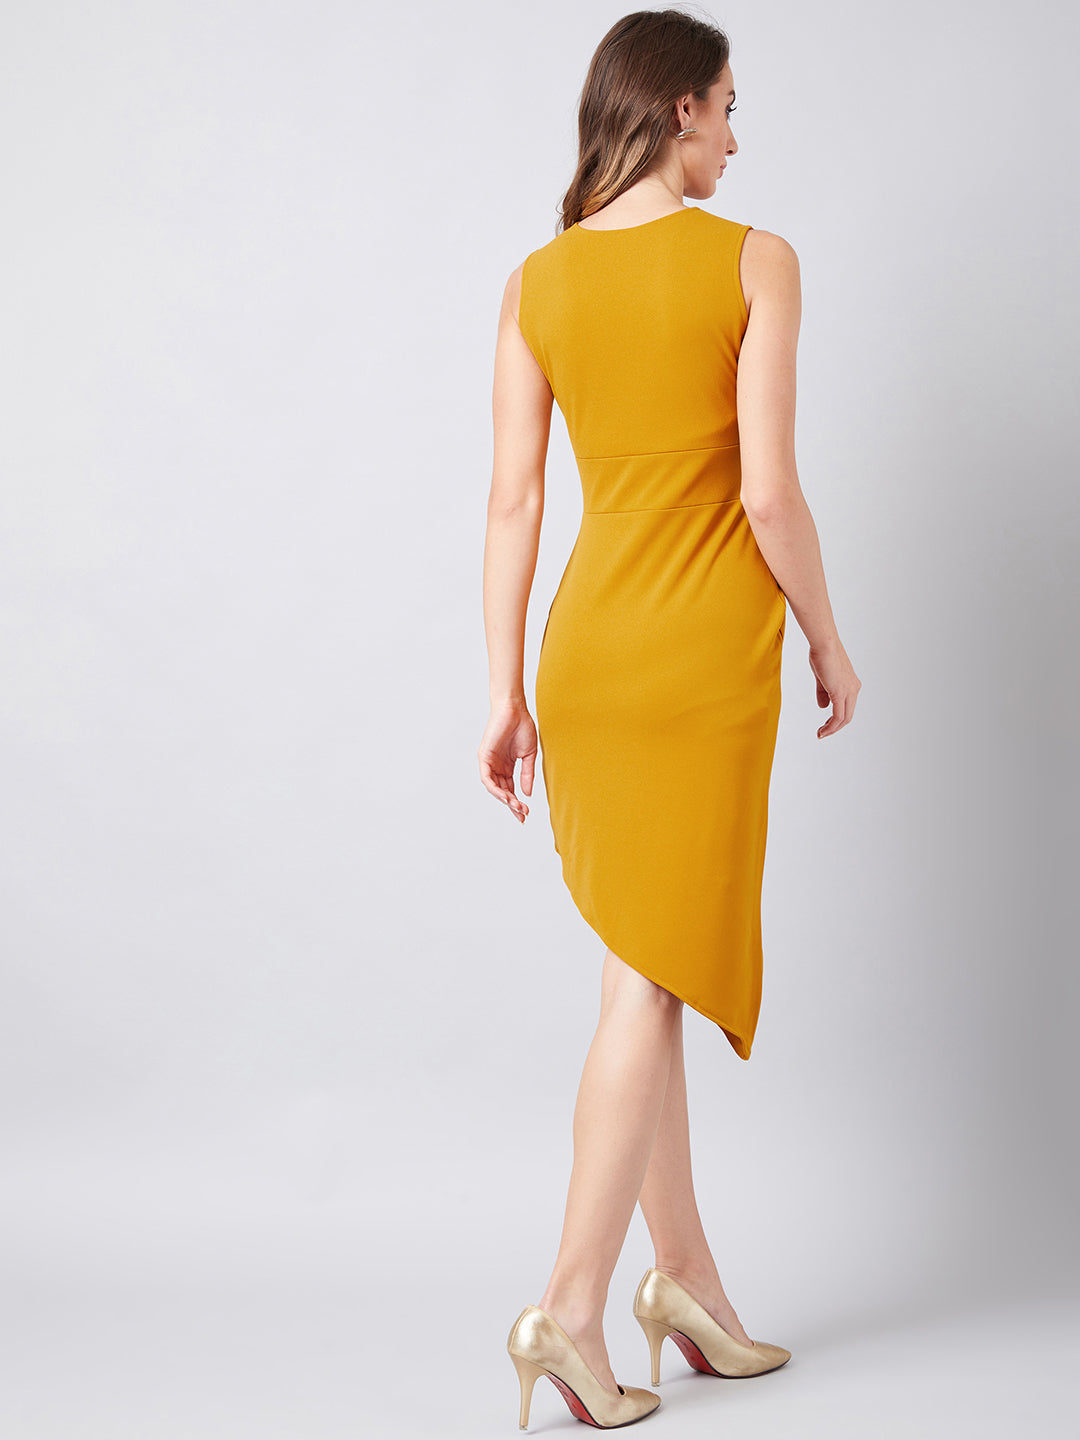 Athena Women Mustard Yellow Solid Sheath Dress - Athena Lifestyle